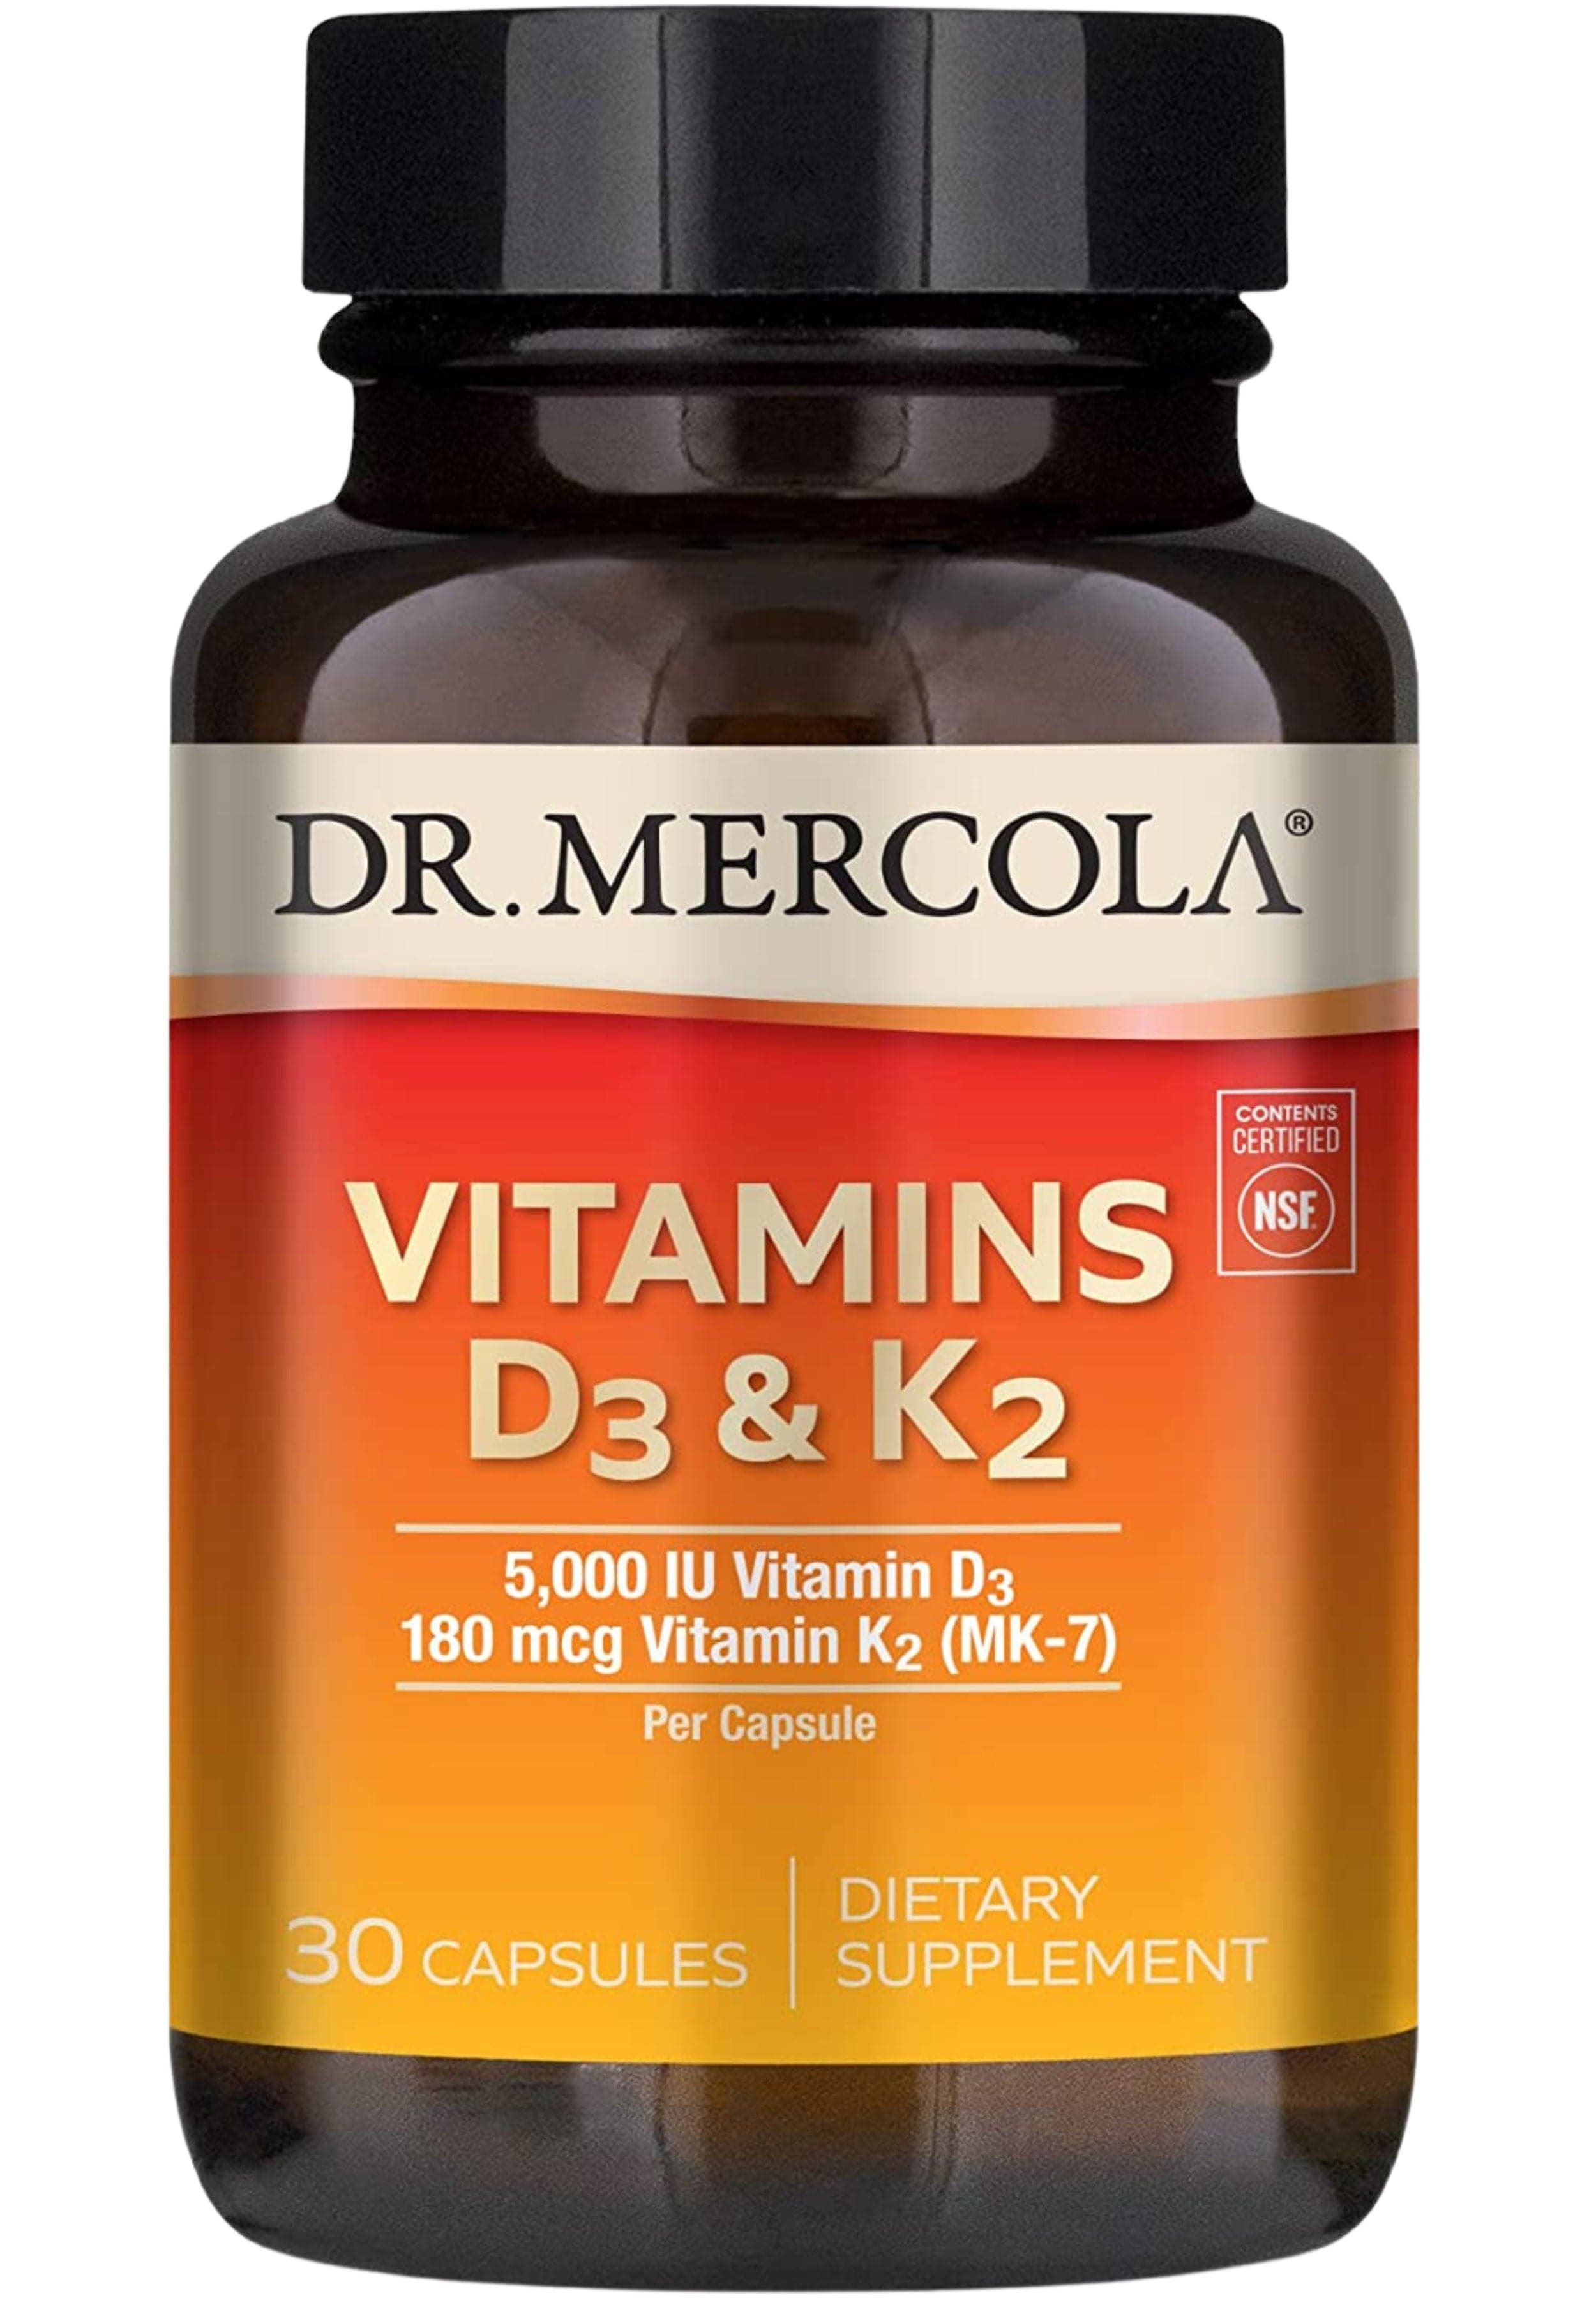 Dr. Mercola Vitamins D3 & K2